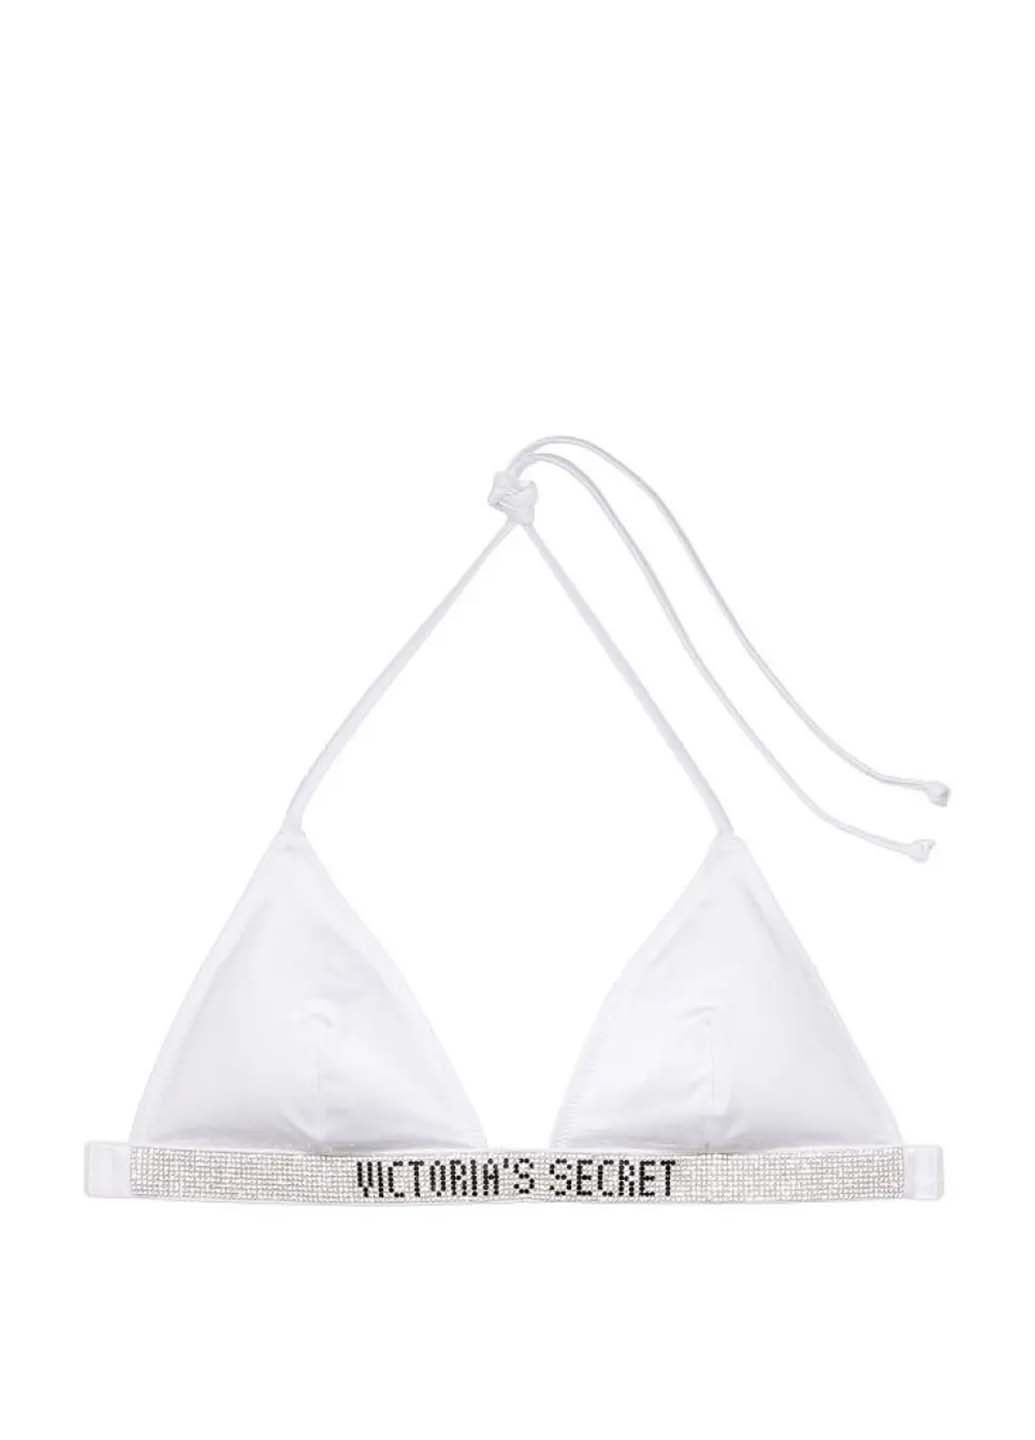 Комбинированный летний купальник (лиф, трусы) раздельный, бикини Victoria's Secret